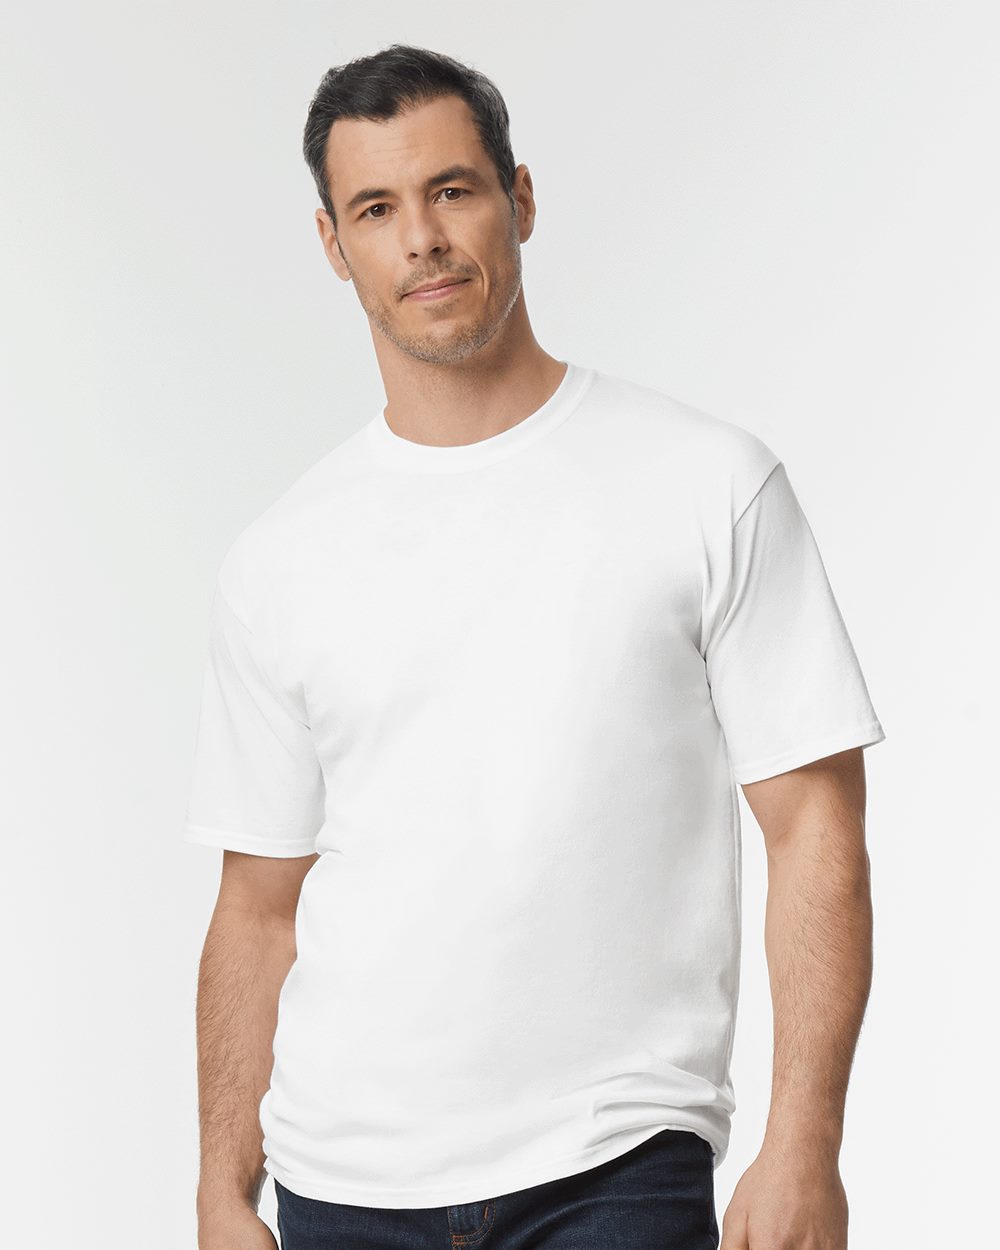 Big Men's T-Shirt - Dallas - image 5 of 5